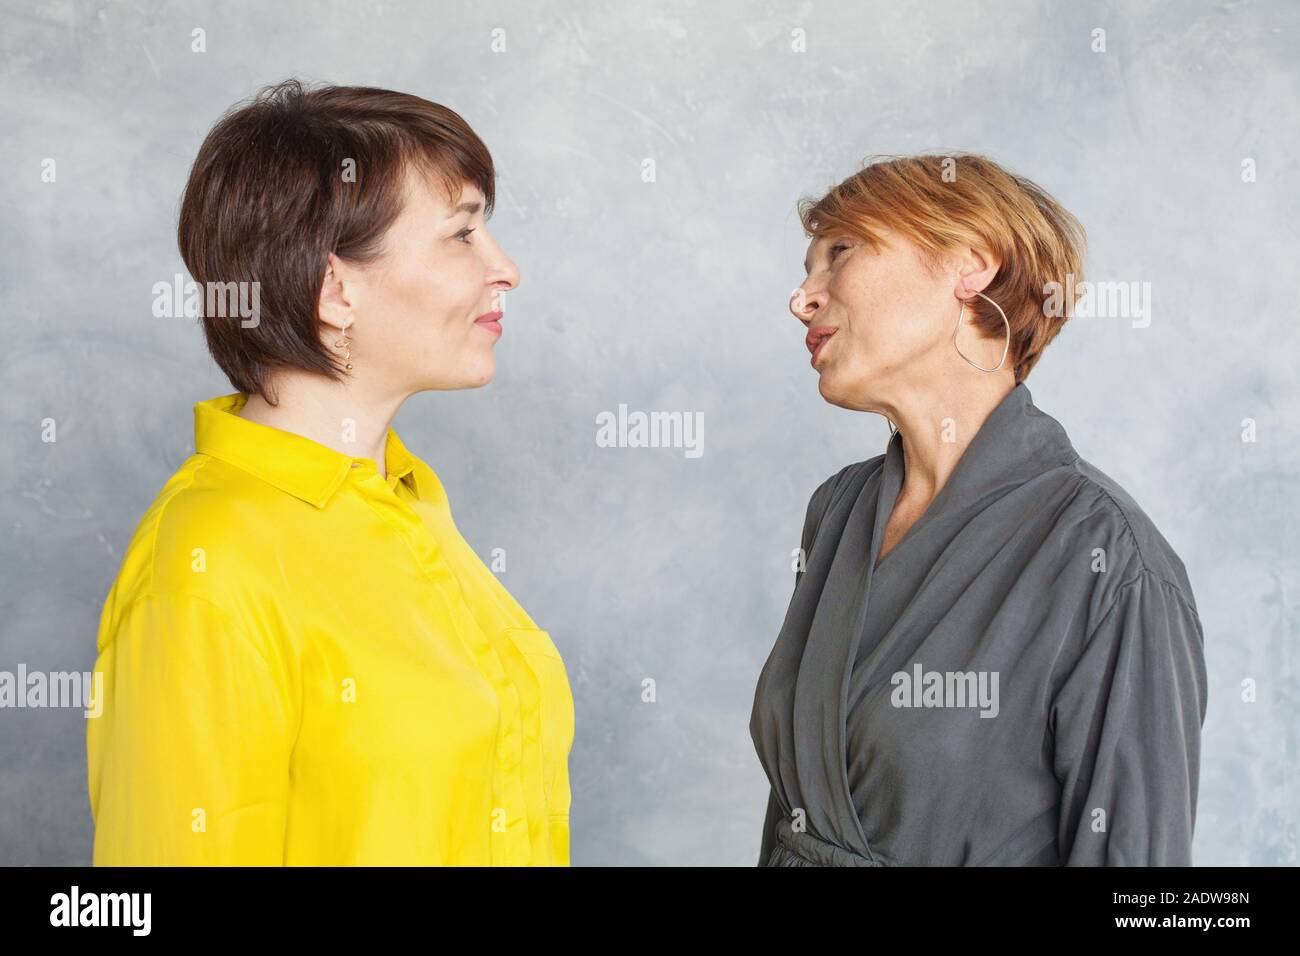 Mature Women chatting et à l'autre et sur fond gris. Deux femmes de 45 et 60 ans portrait Banque D'Images